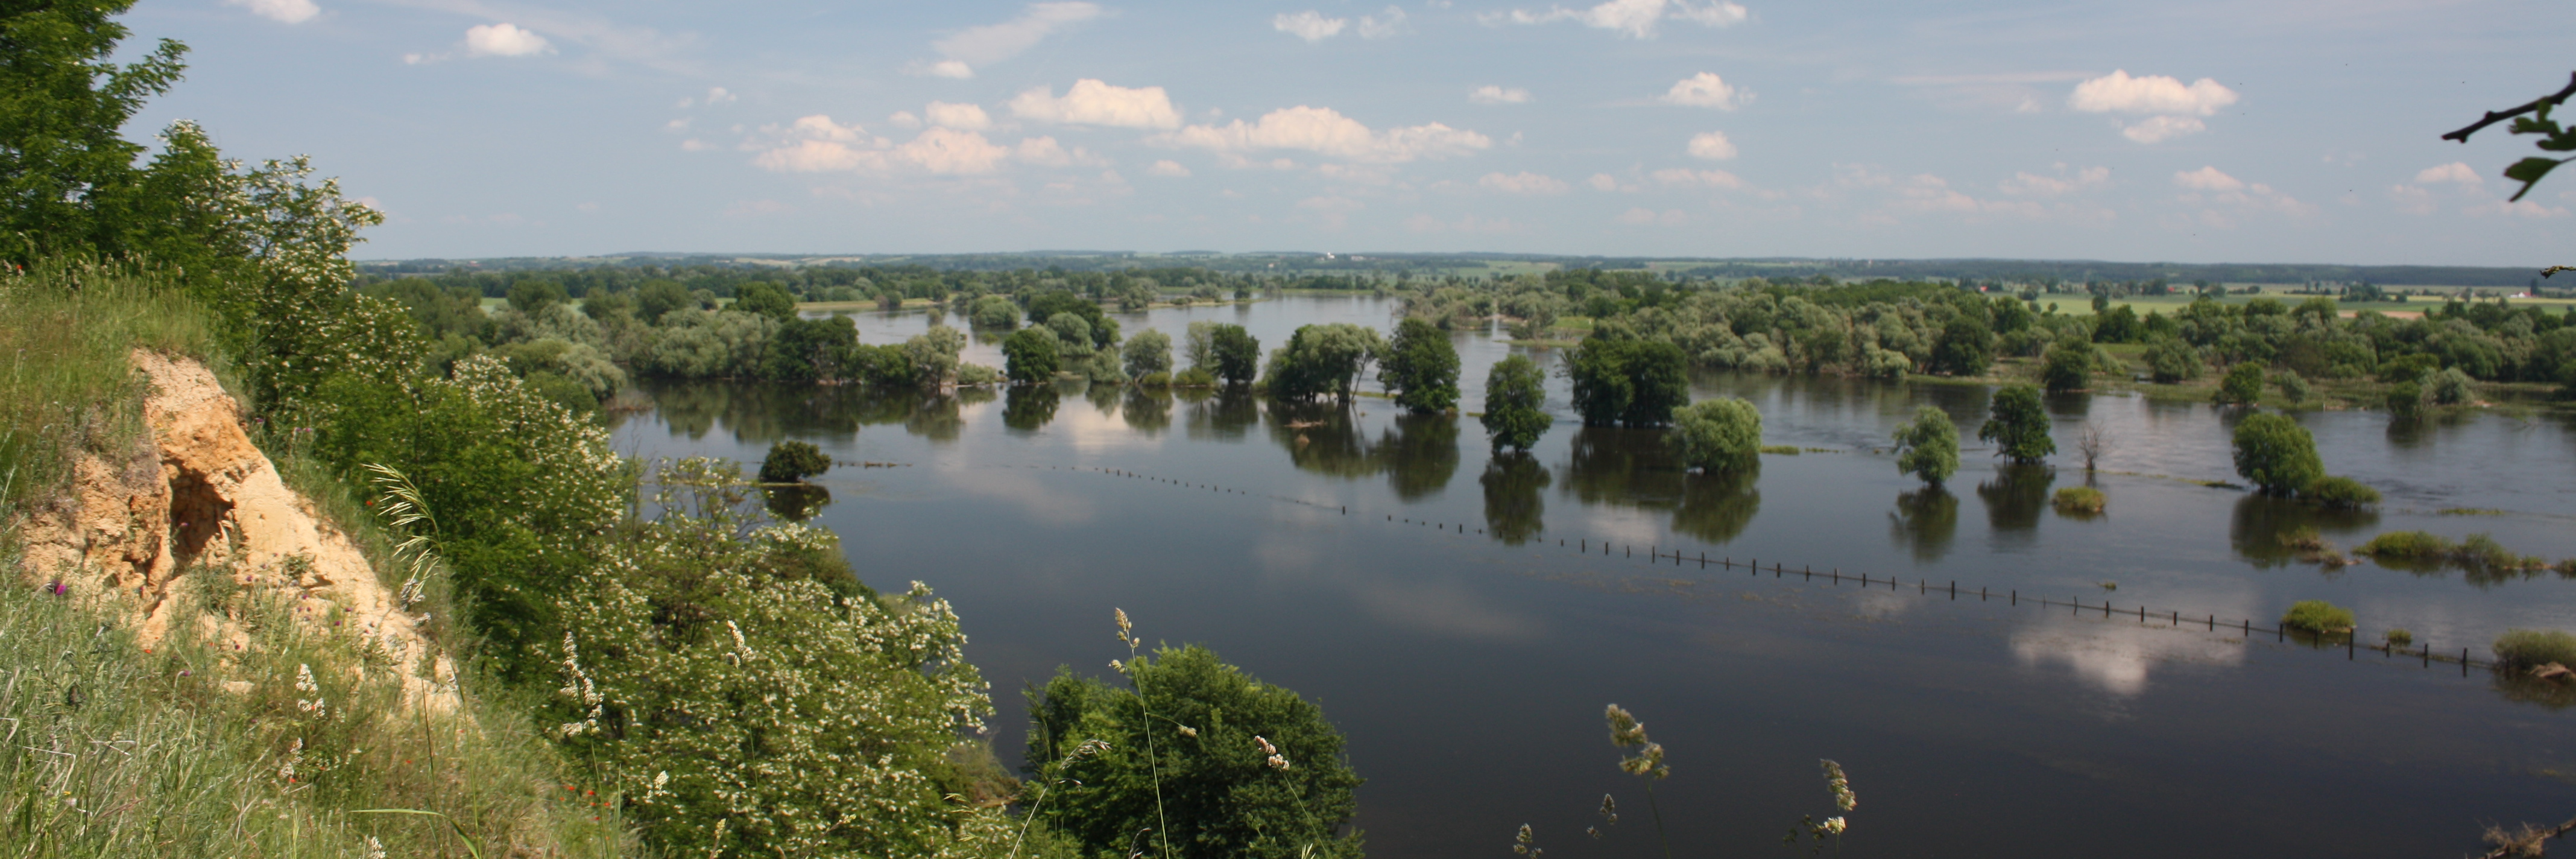 Das Hochwasser an der Oder hat 2010 weite Teile der Oderaue bei Lebus geflutet. Die vorhandene Deichlinie ist nur noch anhand der Baumreihen zu erkennen. Im Bildvordergrund fällt als Kontrast dazu die Kante eines verbuschten Trockenhangs steil bergab.